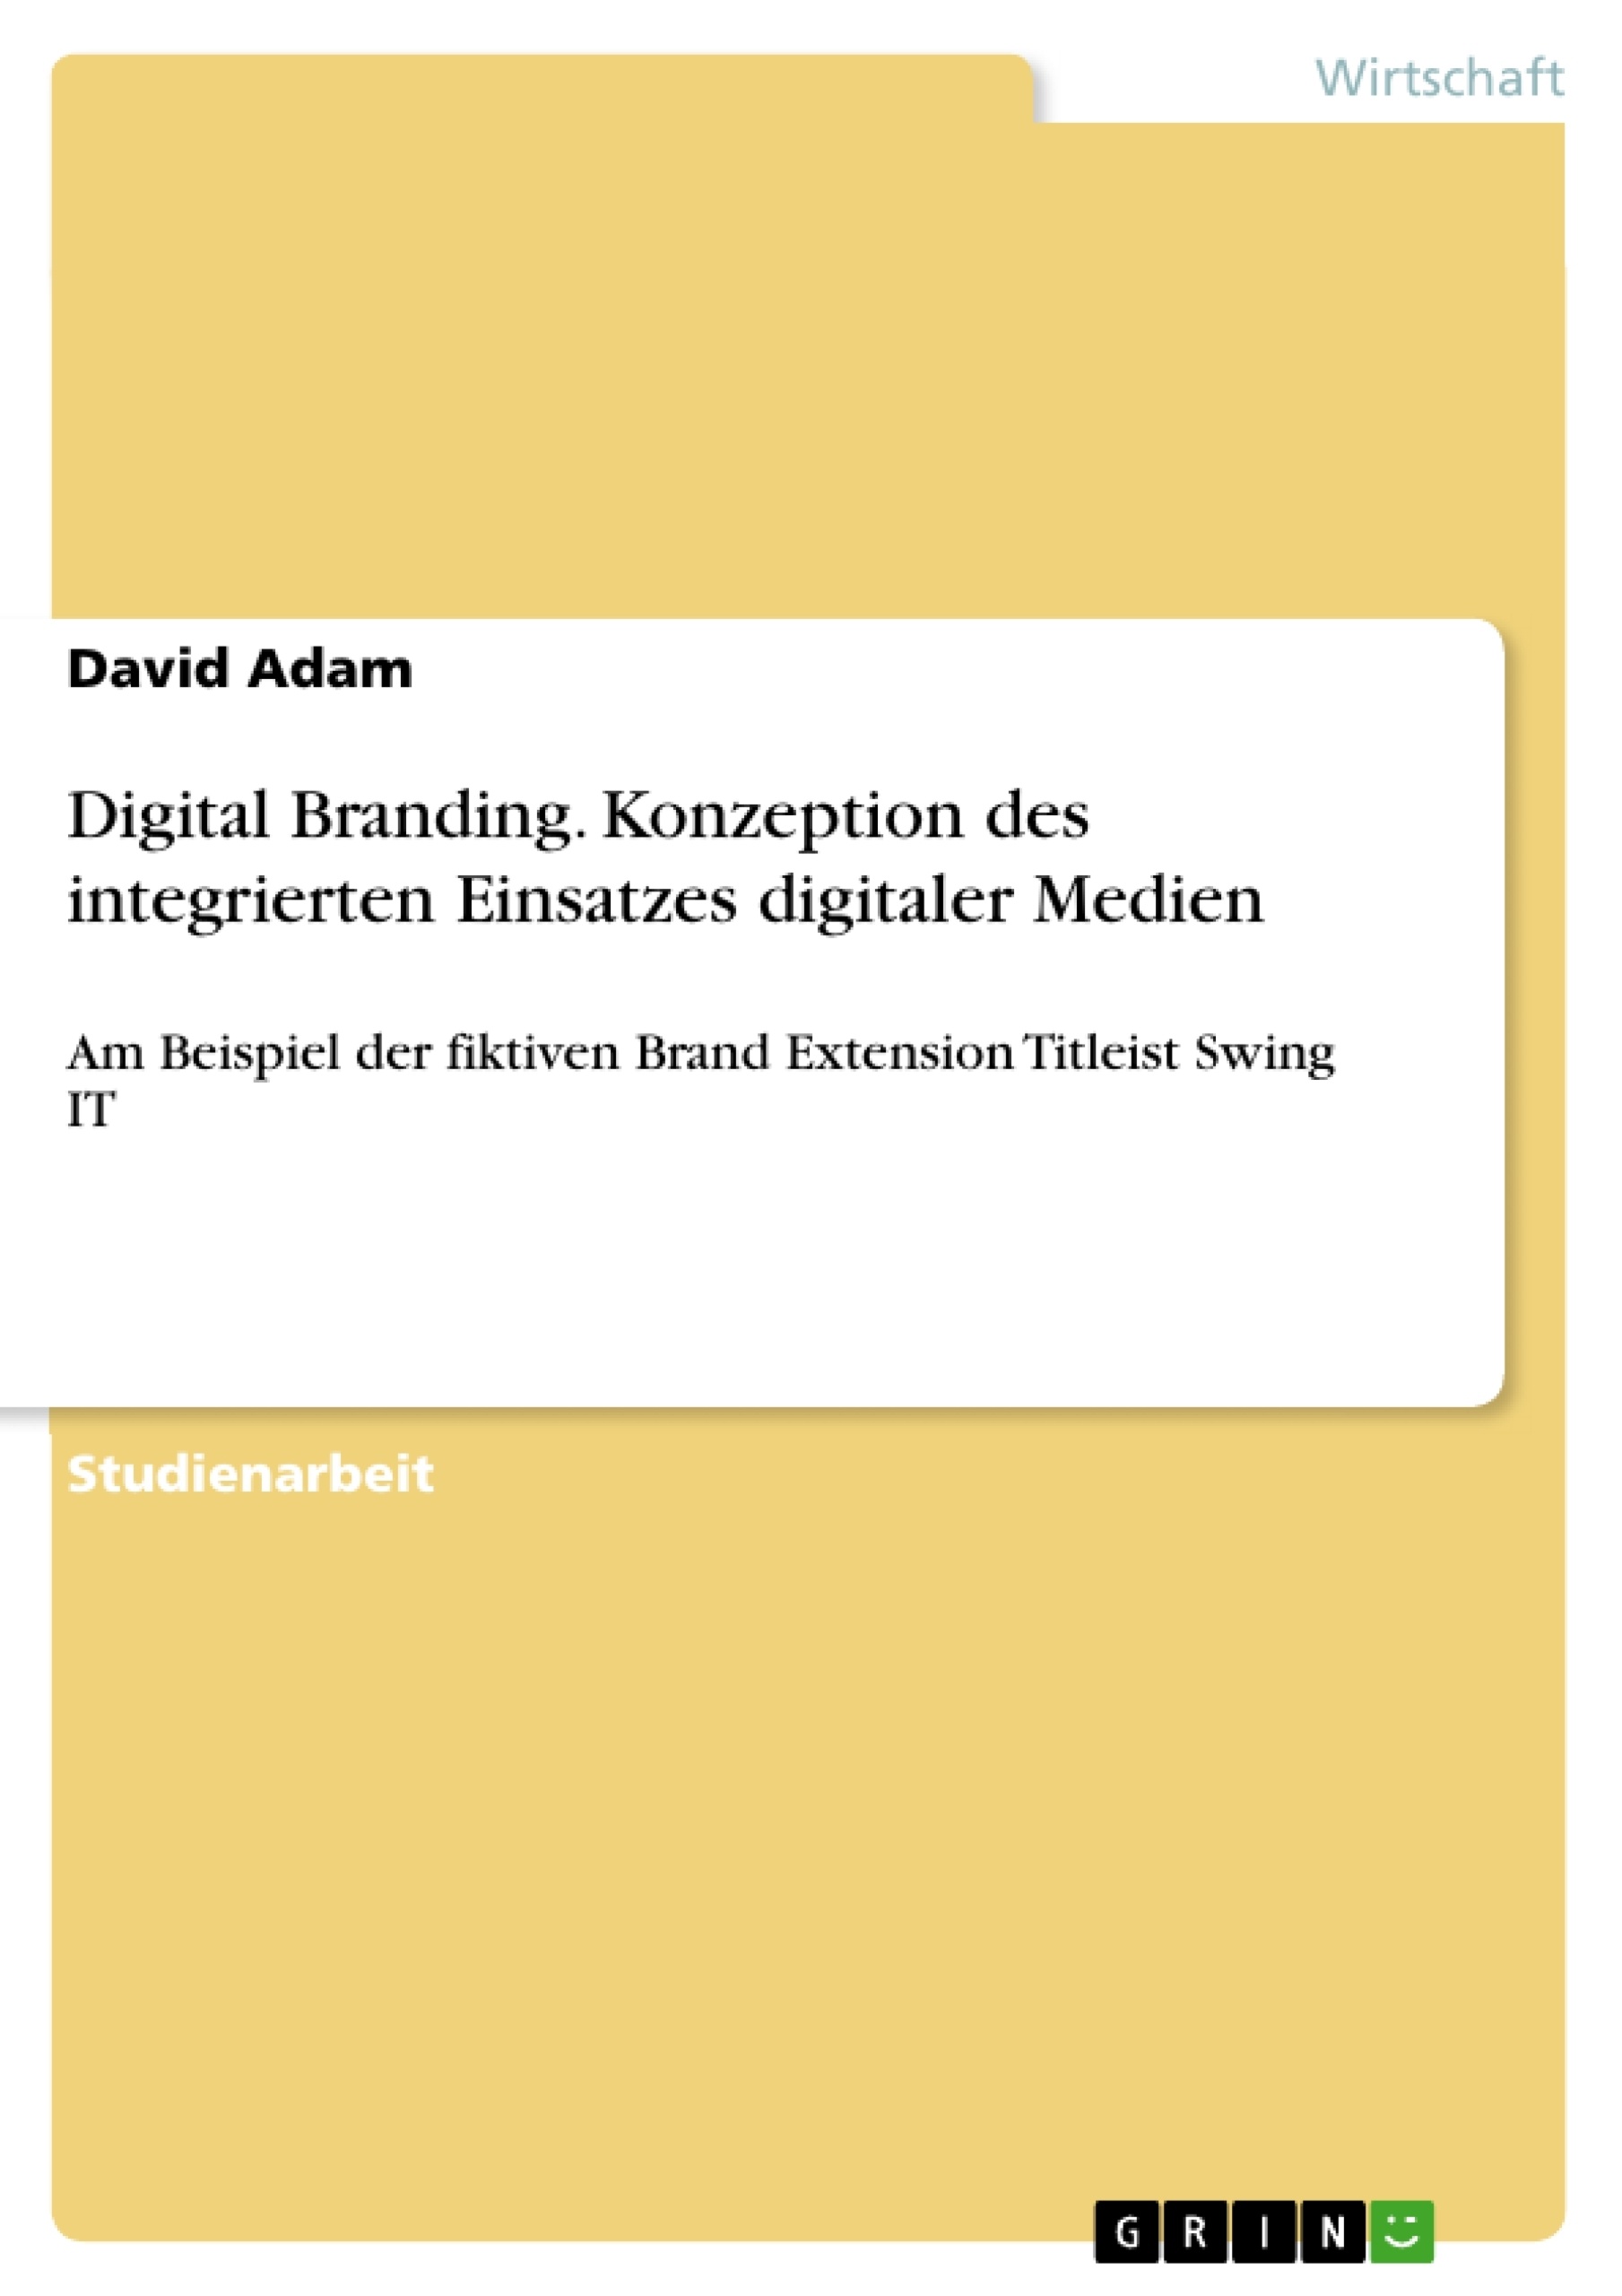 Title: Digital Branding. Konzeption des integrierten Einsatzes digitaler Medien